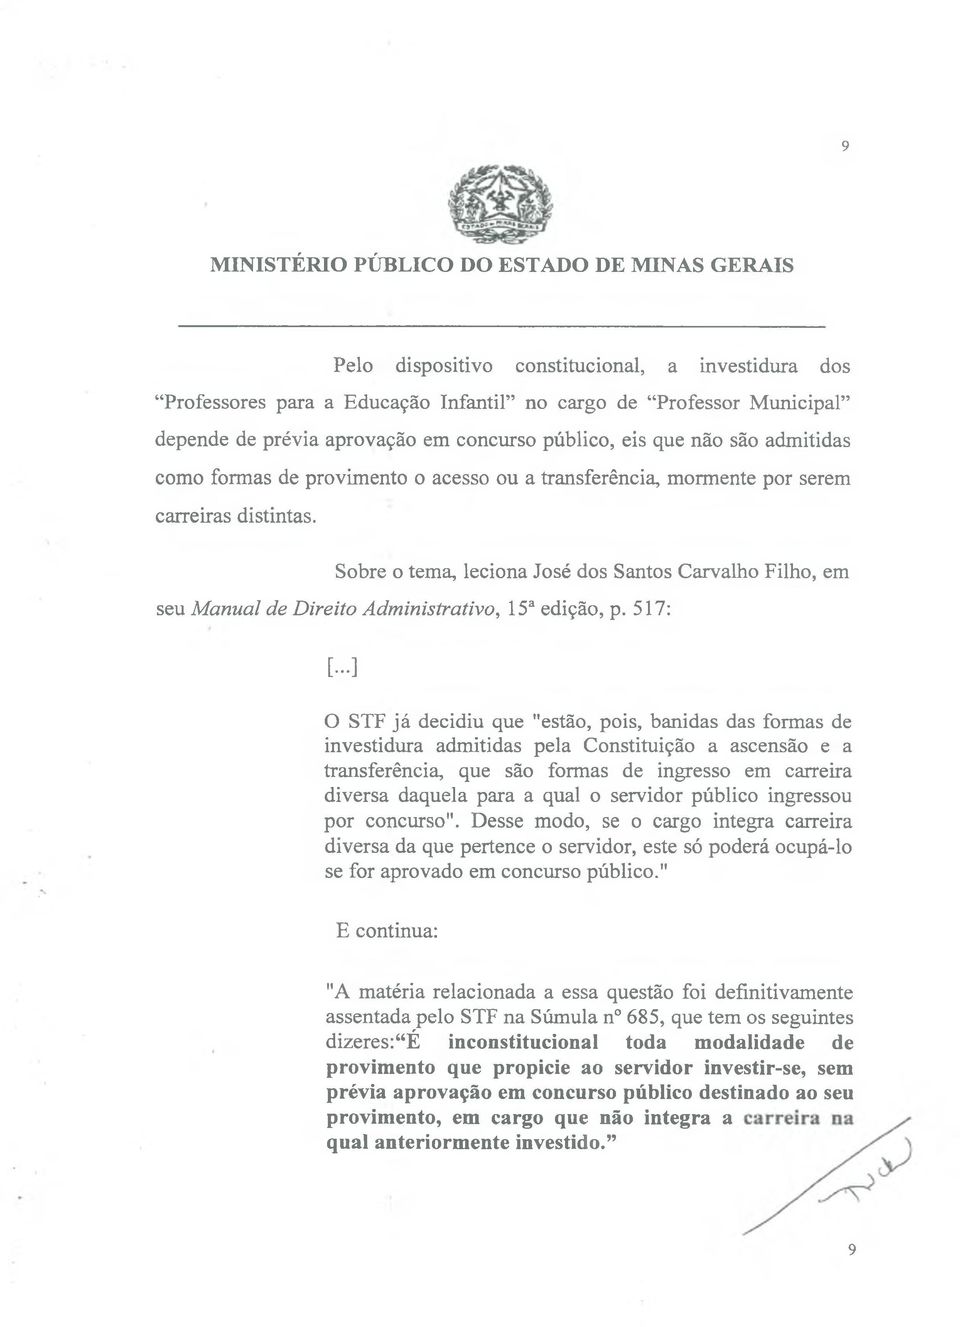 Sobre o tema, leciona José dos Santos Carvalho Filho, em seu Manual de Direito Administrativo, 15a edição, p. 517: [.